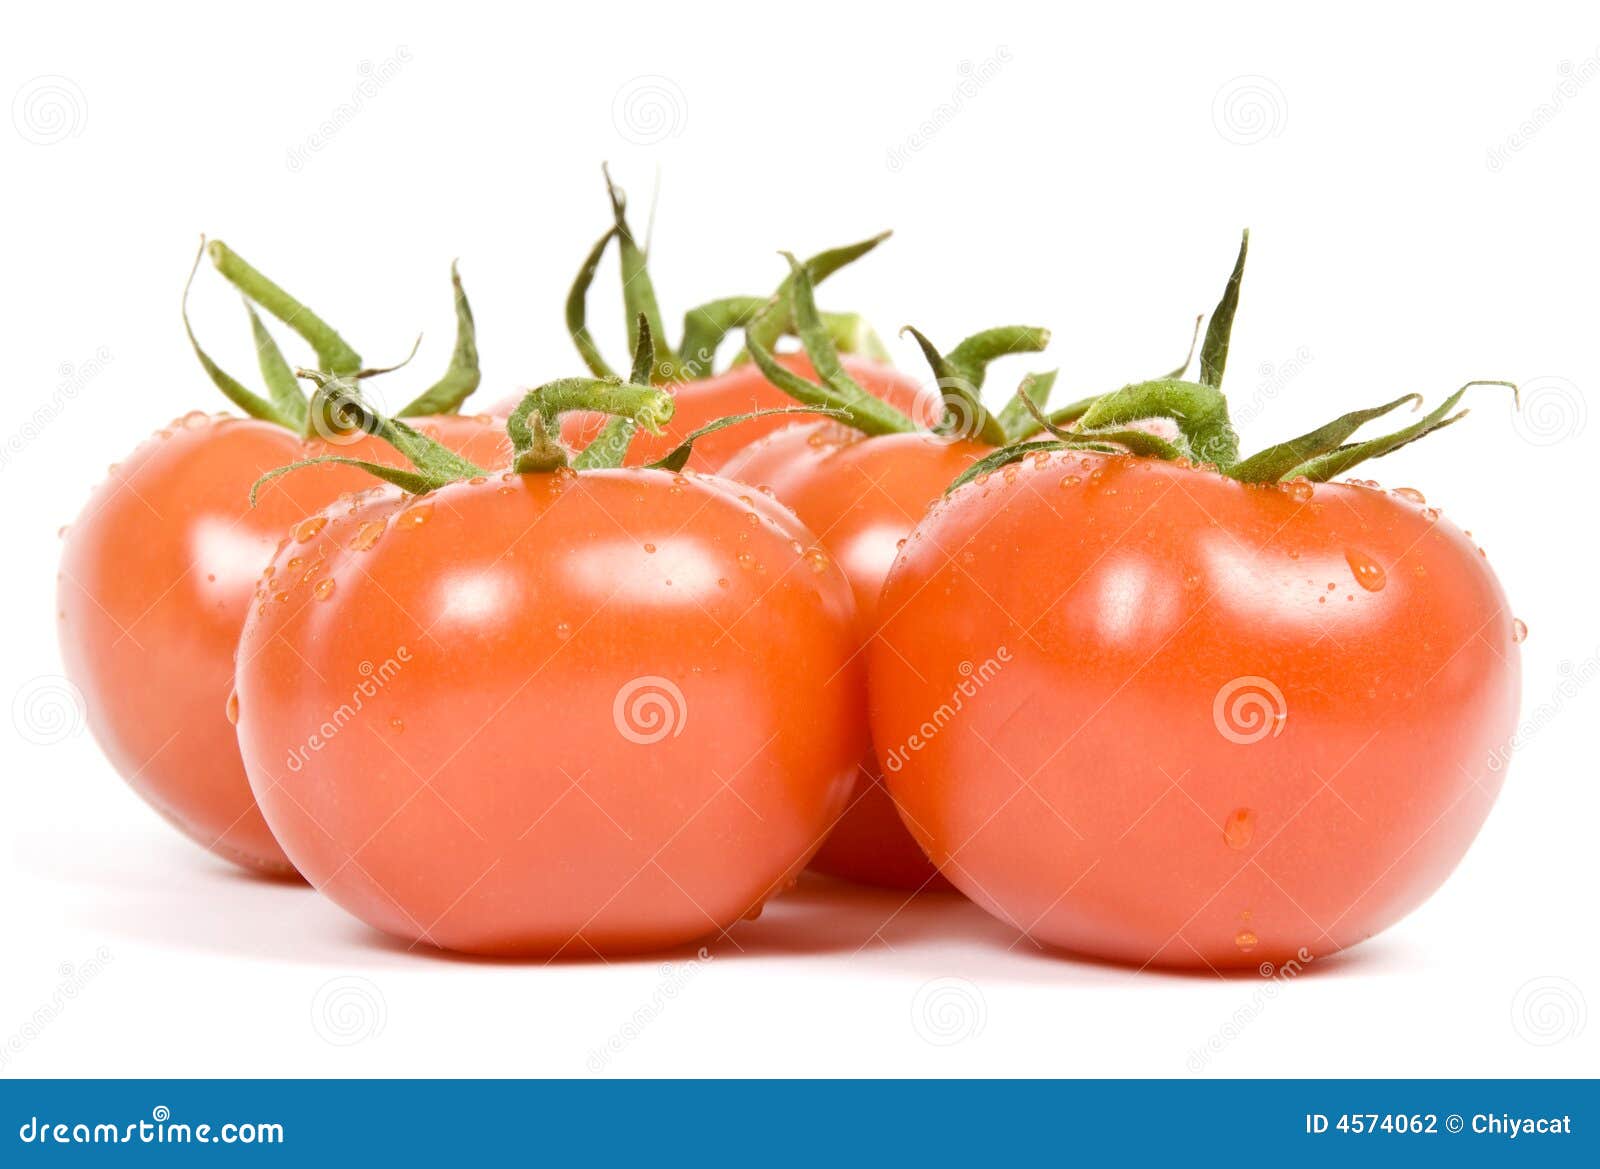 vine ripen tomatoes